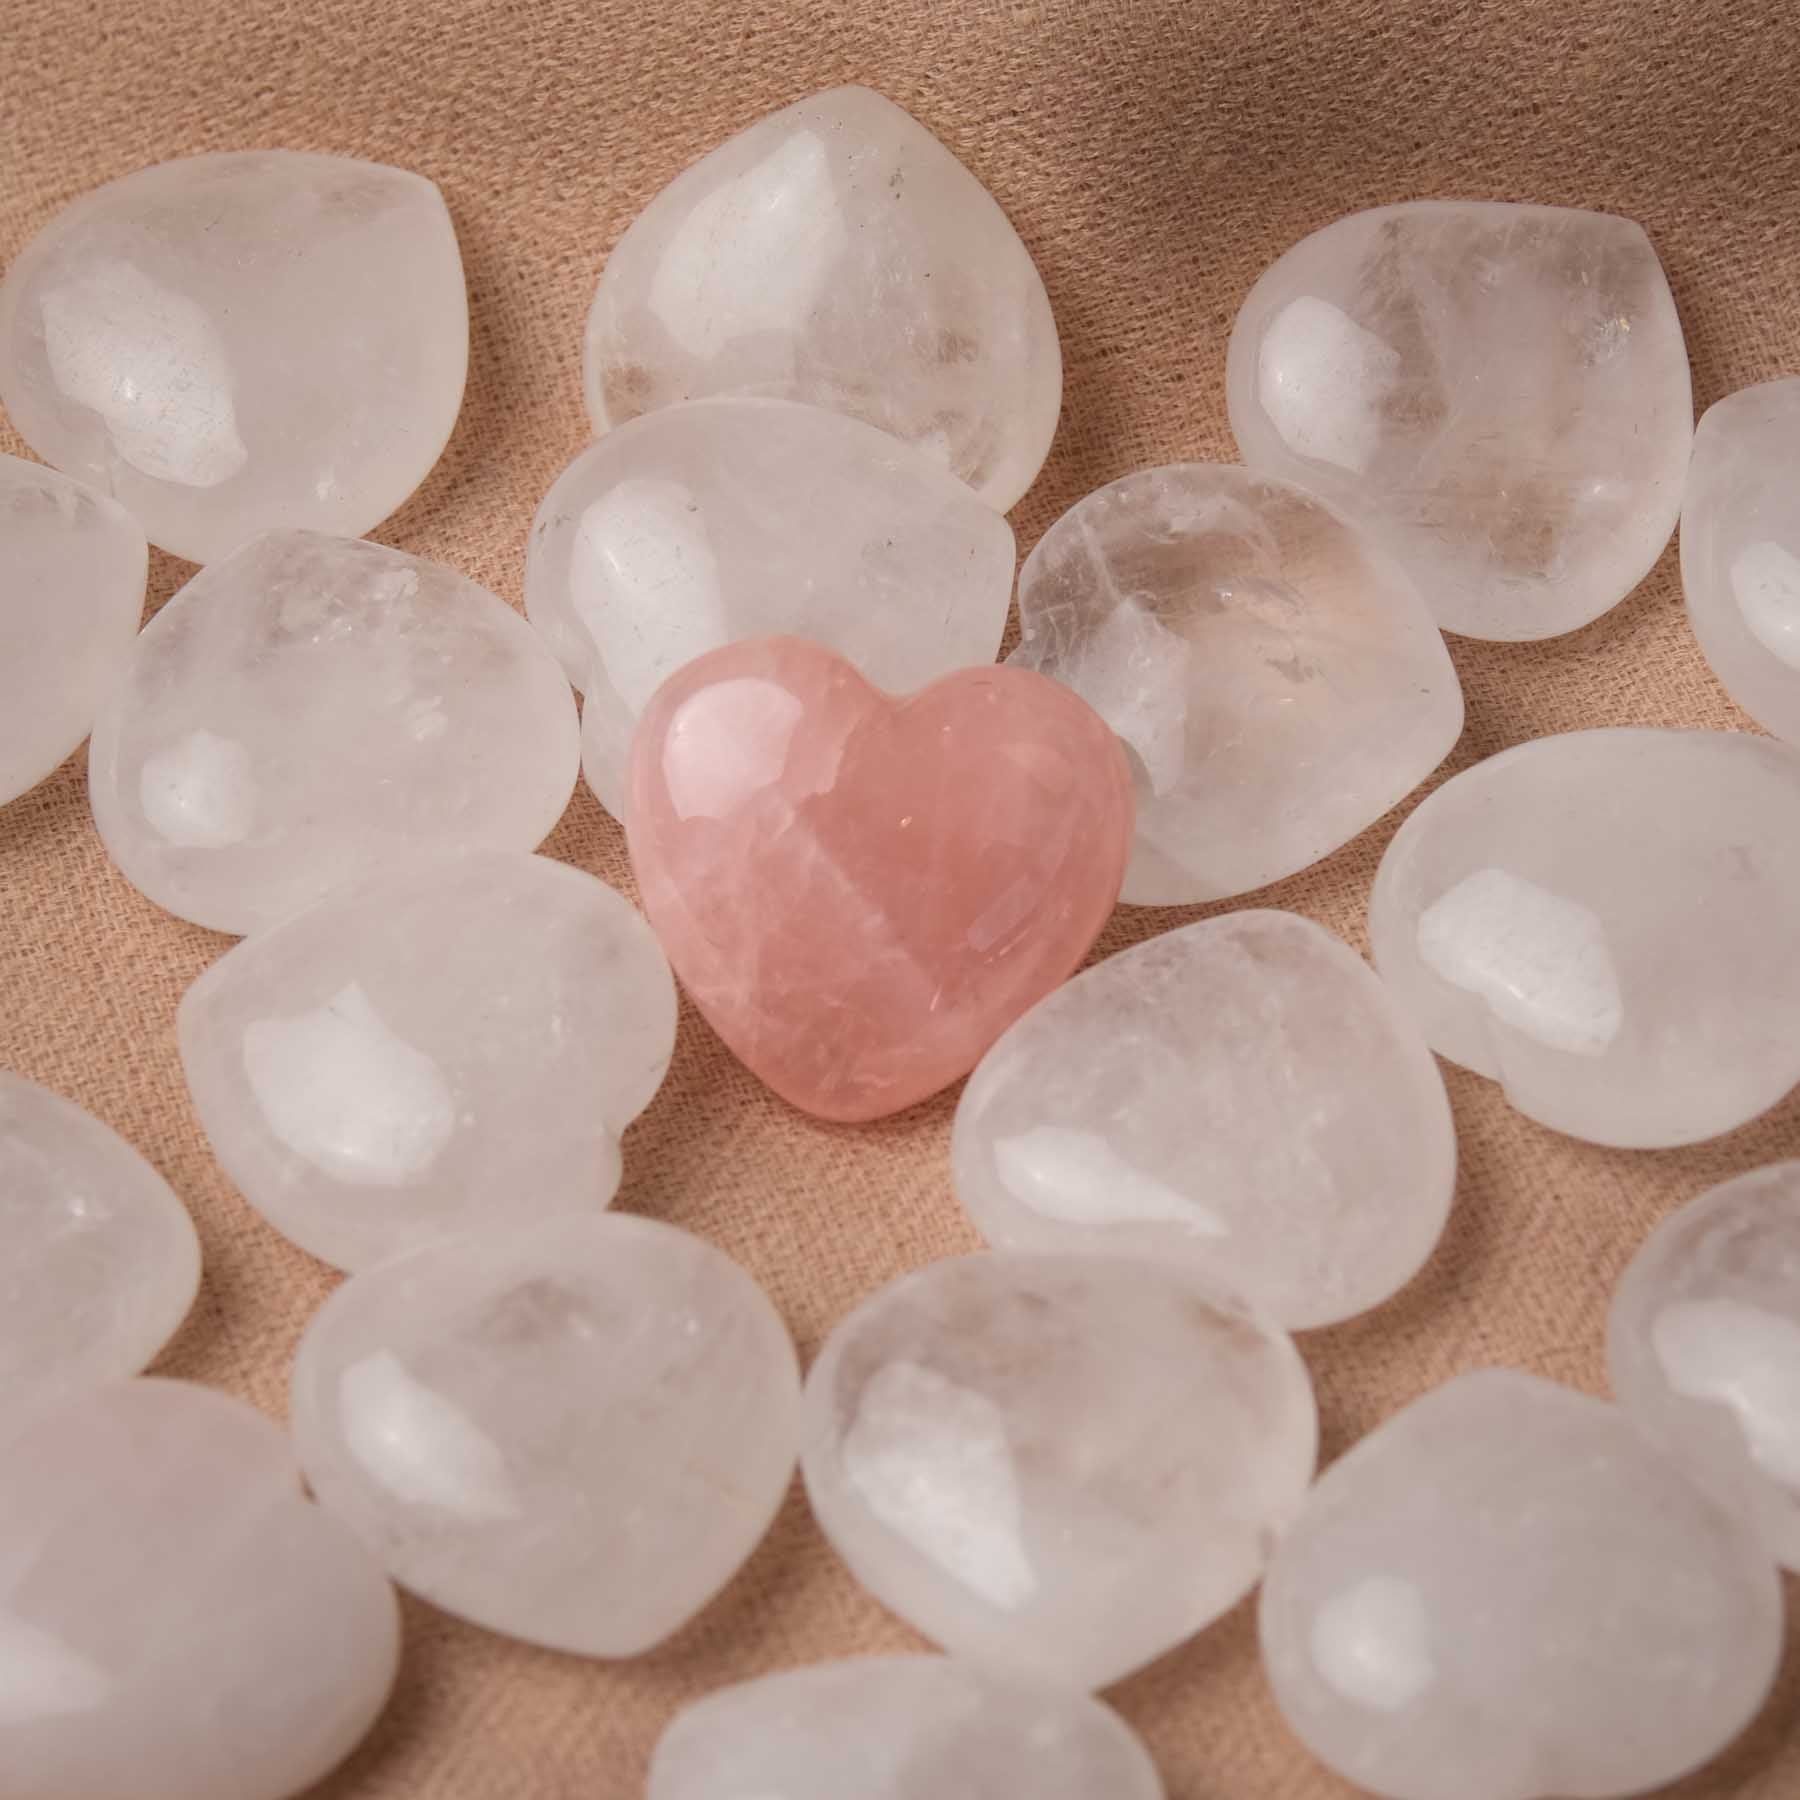 Cristallo di rocca con cuore in pietra preziosa (trasparente)